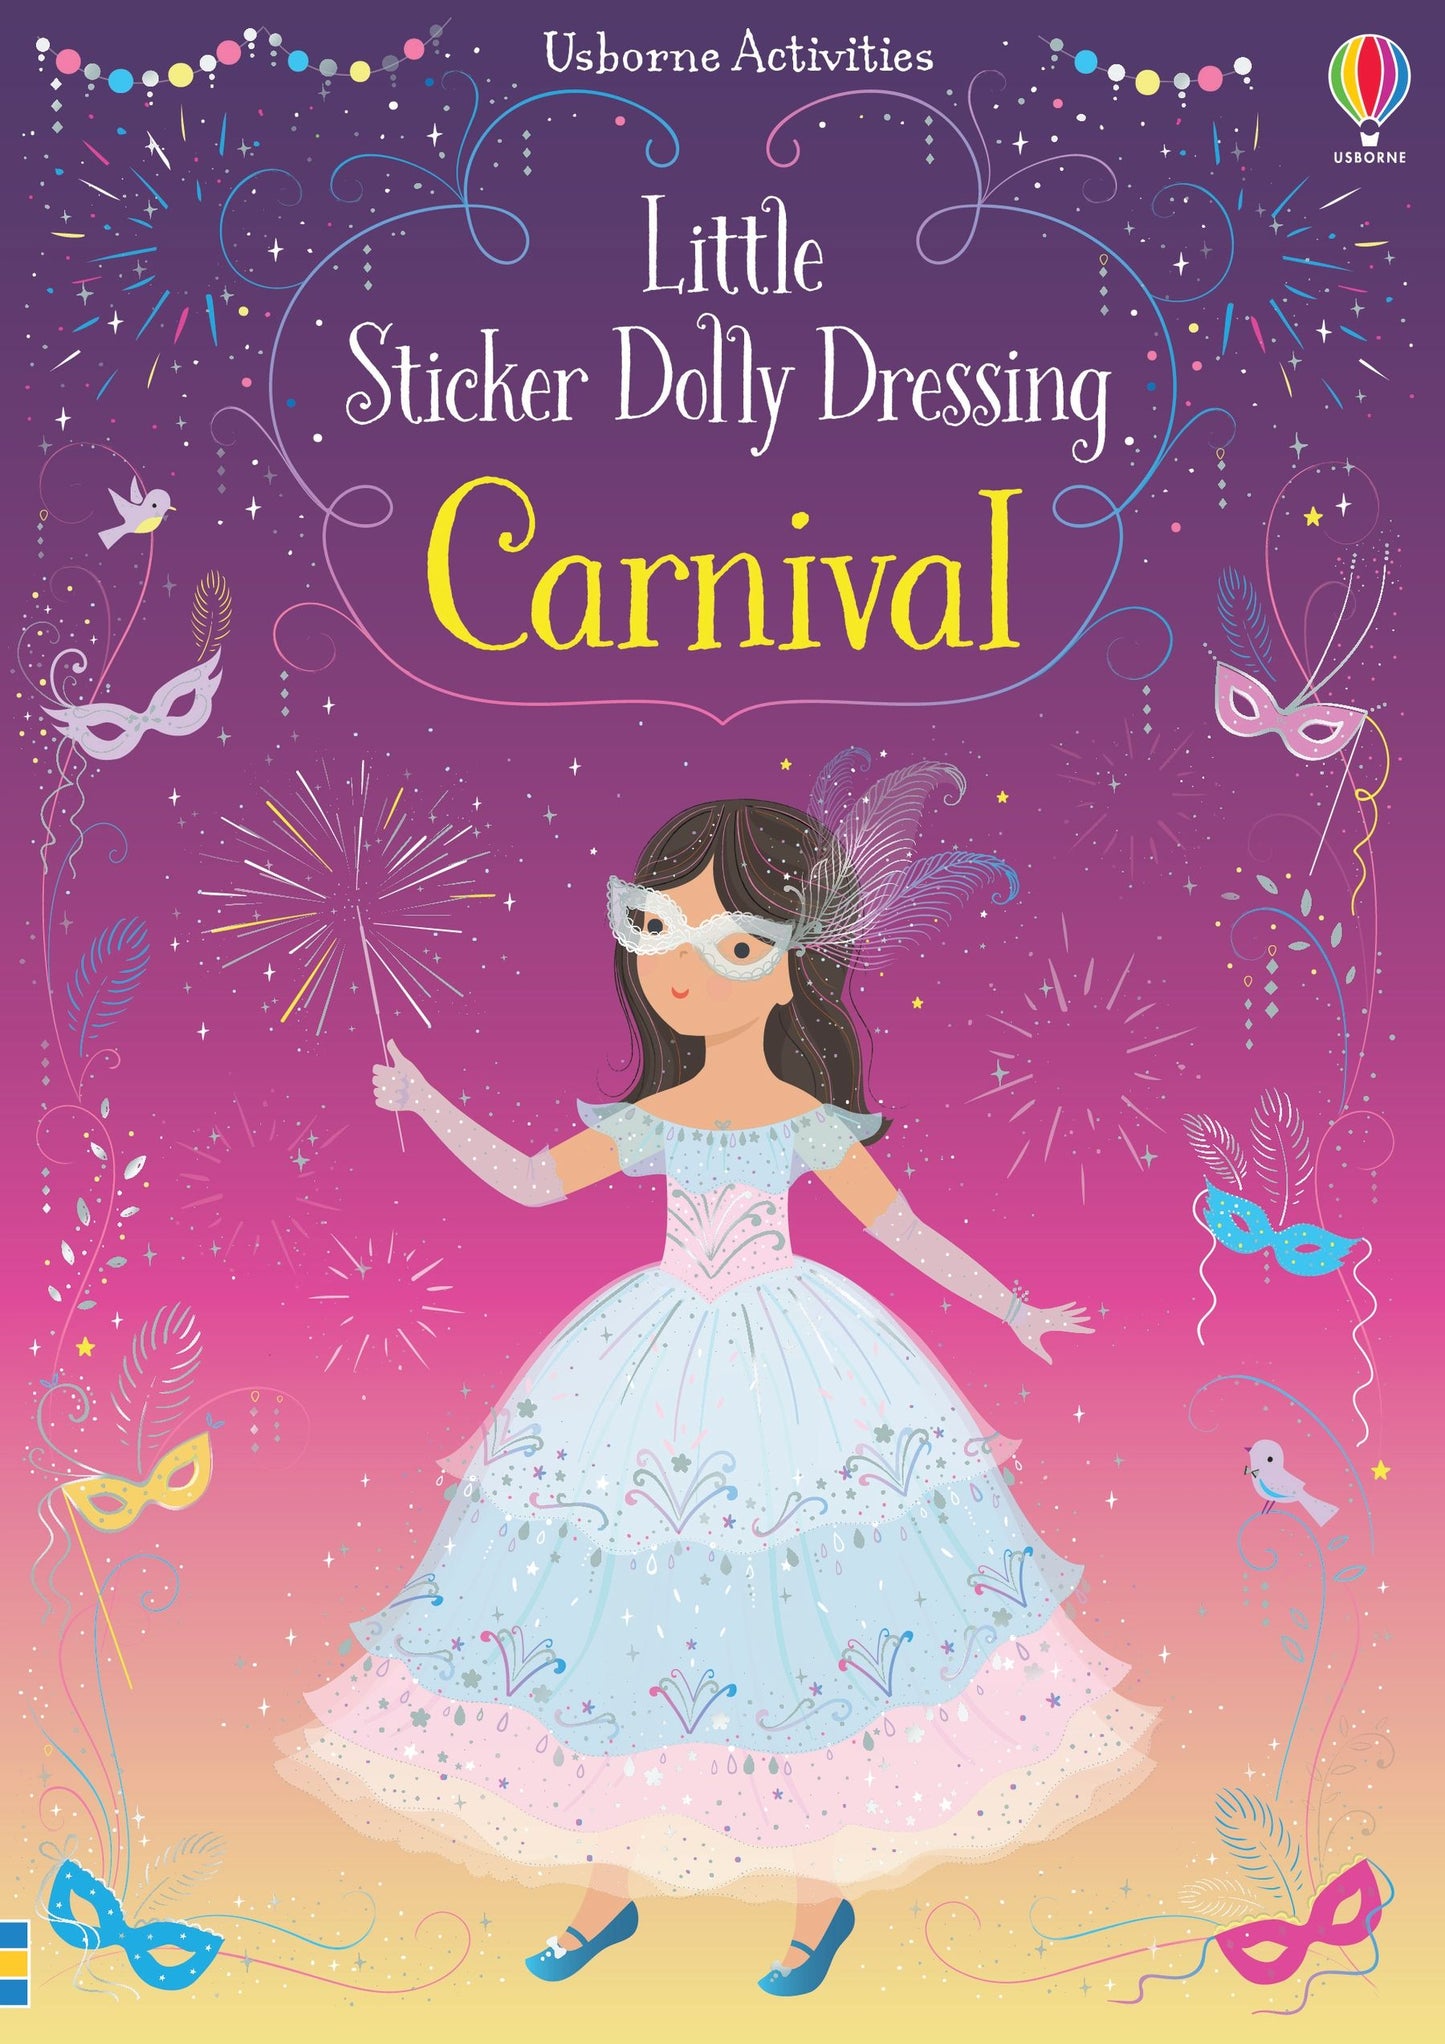 Usborne Books - Little Sticker Dolly Dressing Carnival